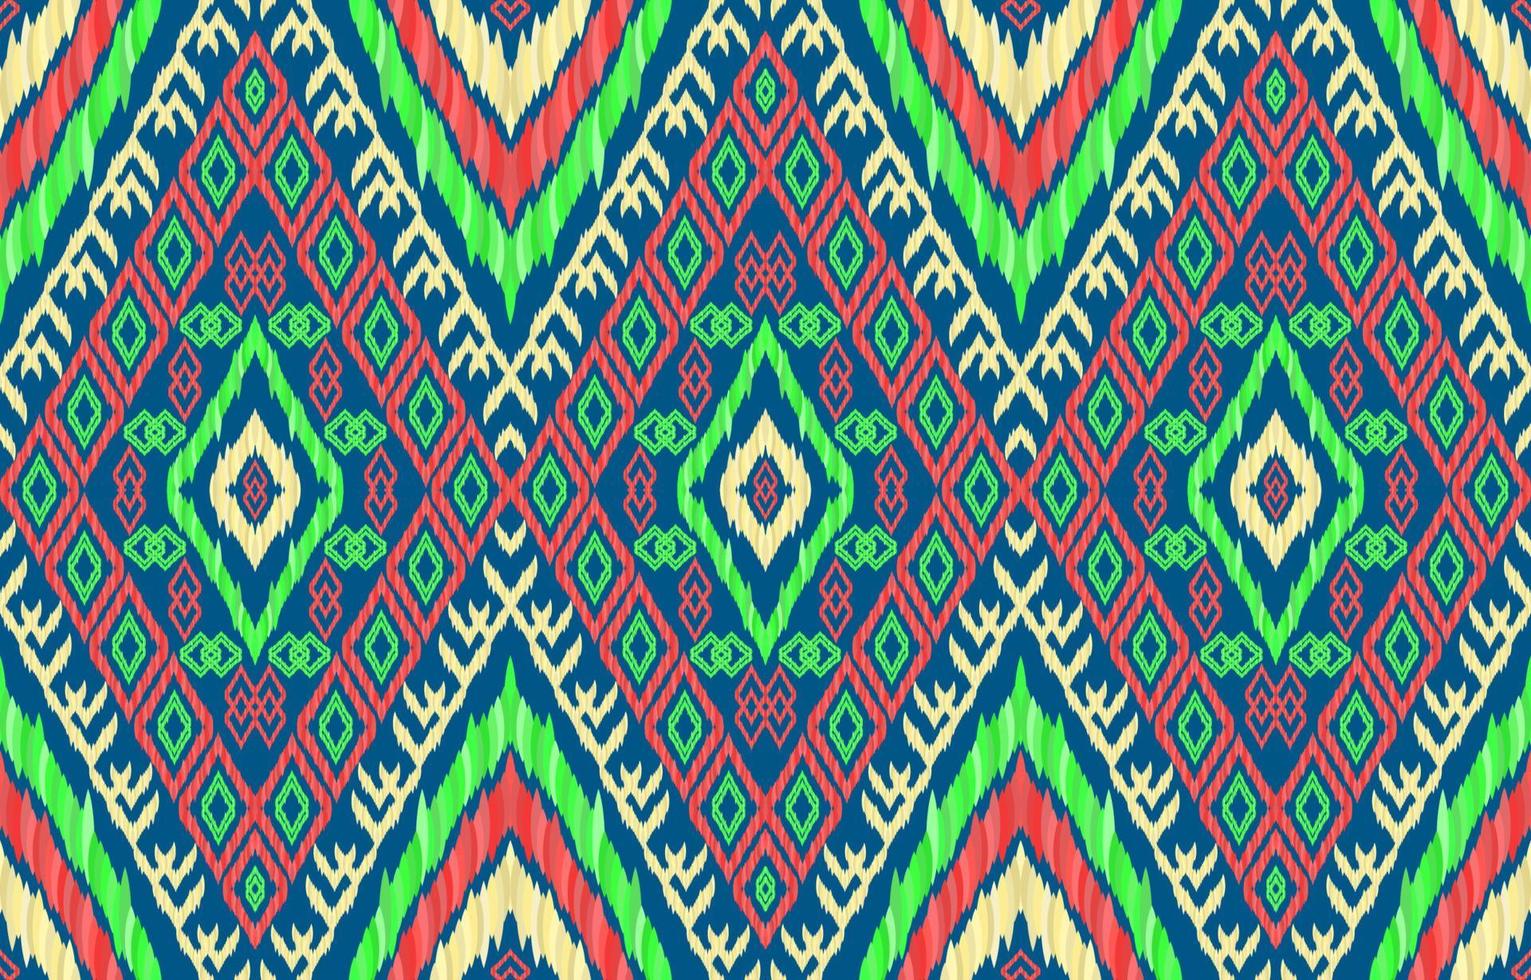 motifs ikat au néon brillants africains. style rétro vintage tribal géométrique. modèle sans couture de tissu ethnique ikat. vecteur d'impression folklorique indien navajo aztèque ikat. conception pour toile de fond texture tissu textile